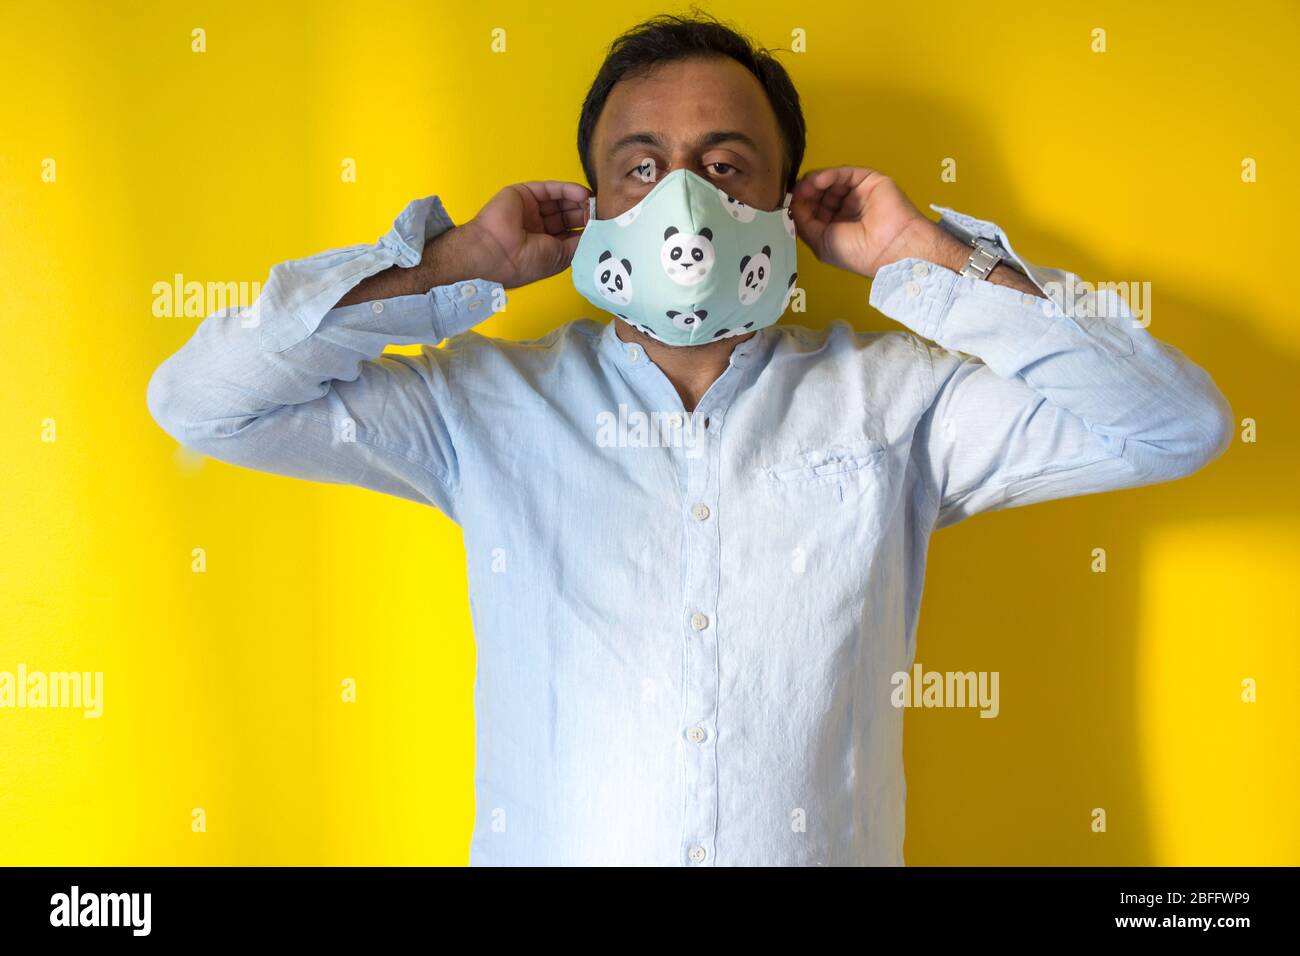 Männlich Modell trägt Hause gemacht Gesichtsmaske, um Infektion von Corona-Virus während der Corona-Pandemie zu vermeiden. Steuer14 Stockfoto